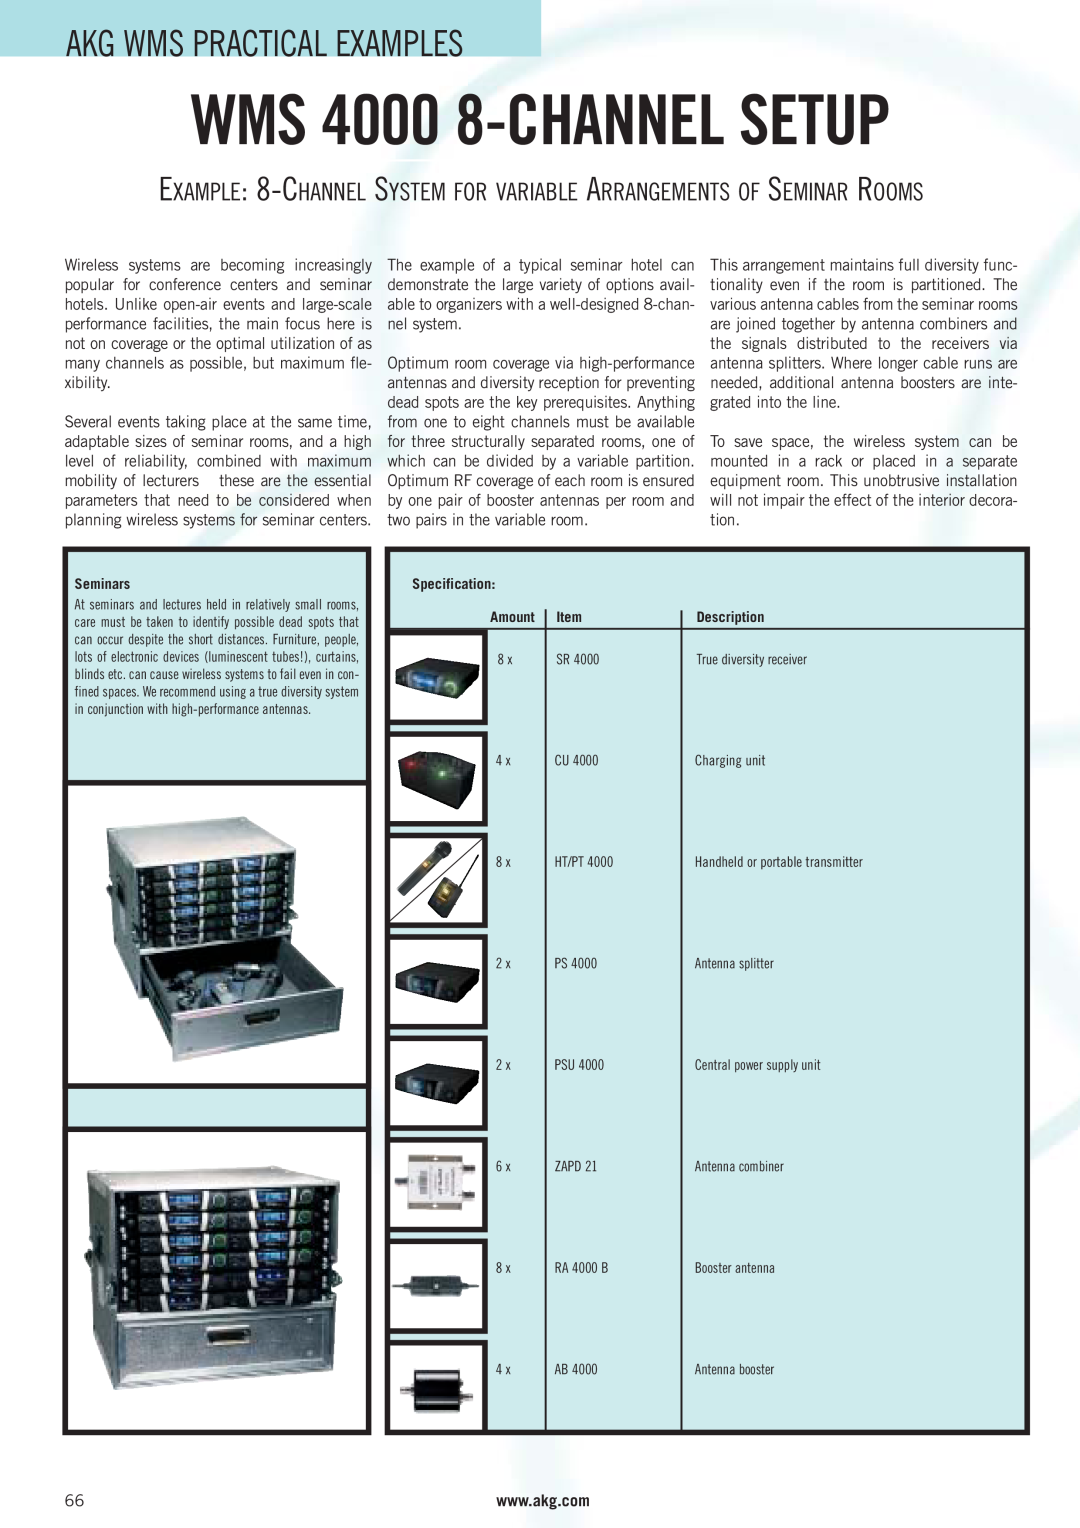 AKG Acoustics manual WMS 4000 8-CHANNEL SETUP, Akg Wms Practical Examples 